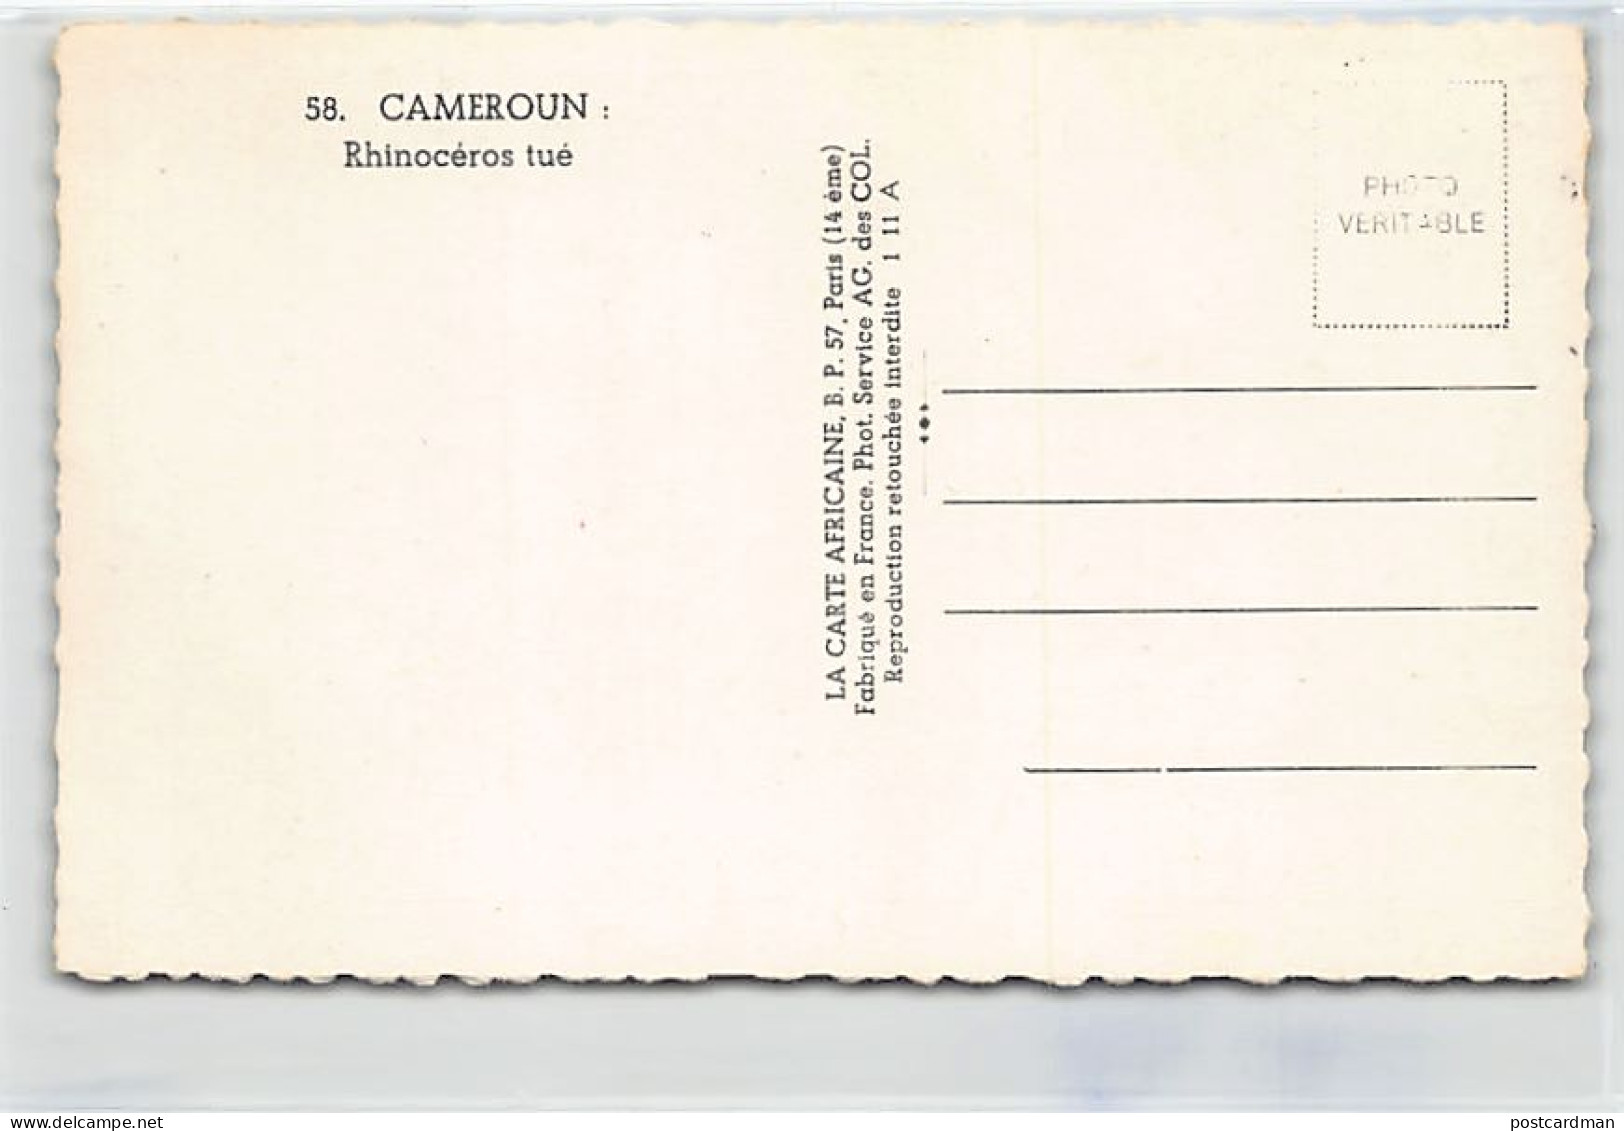 Cameroun - Rhinocéros Tué - Ed. La Carte Africaine 58 - Kamerun